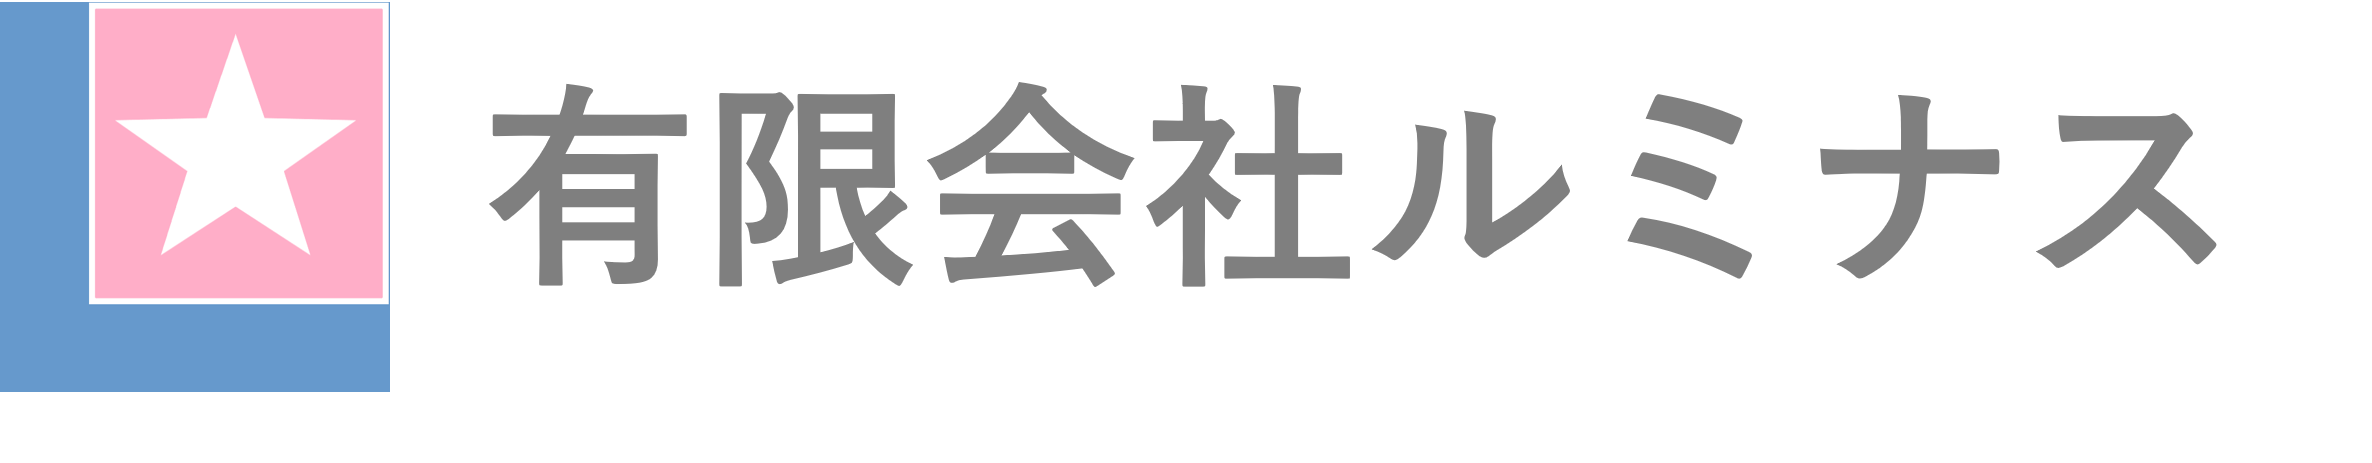 logo_jp.jpg